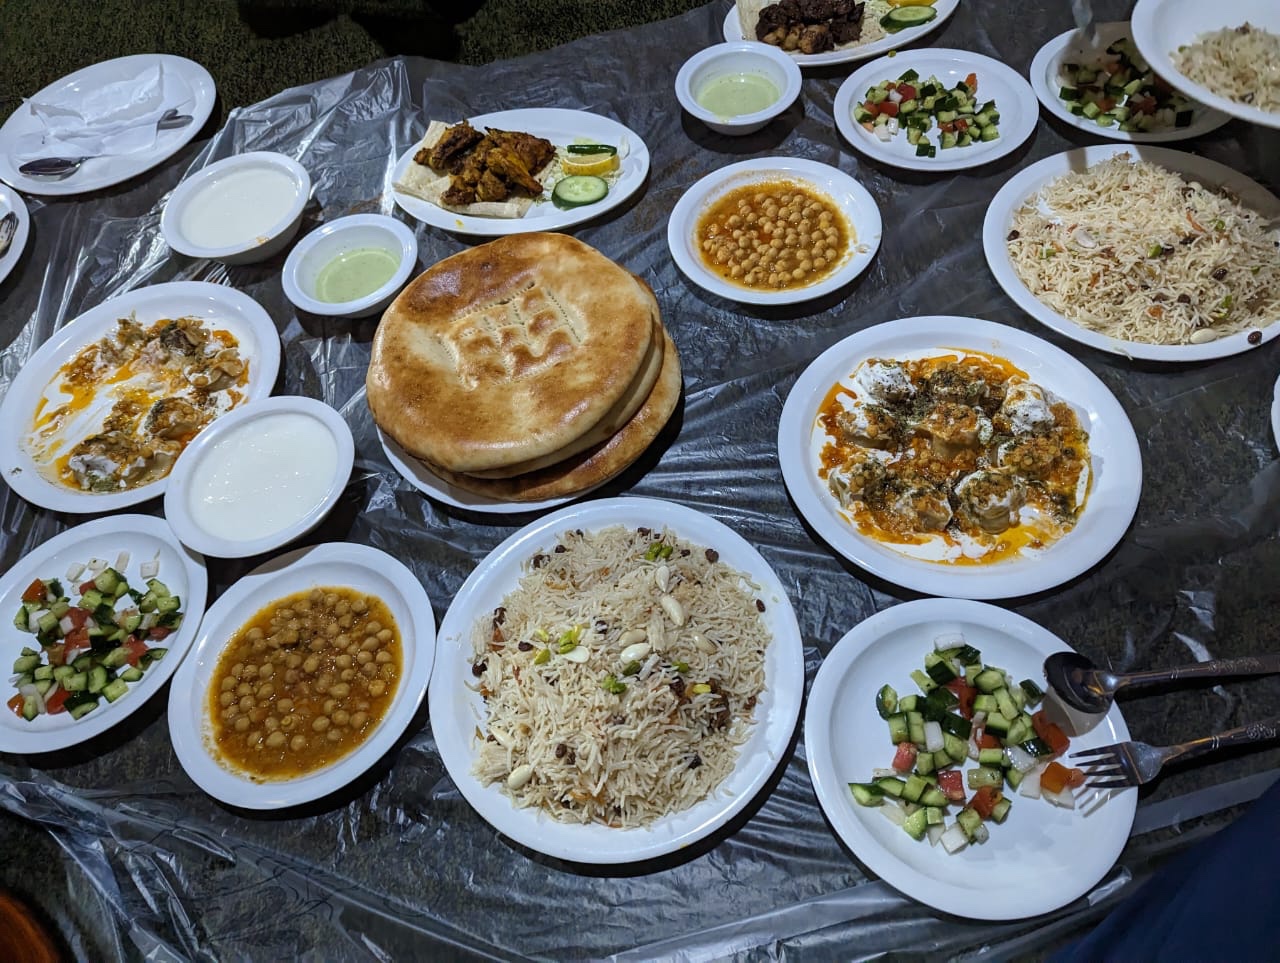 Food in Afghanistan